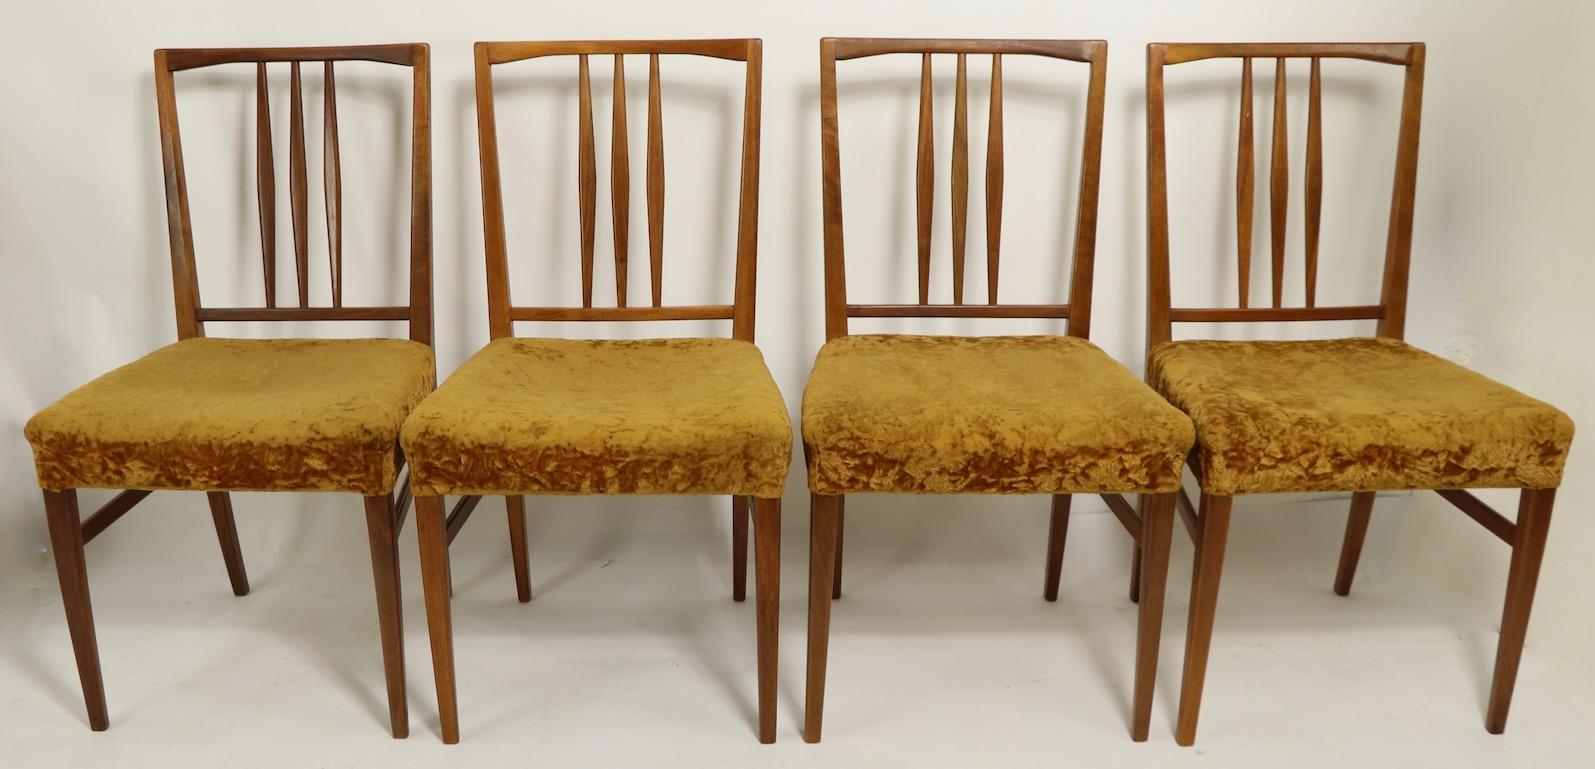 Élégant et gracieux ensemble de 4 chaises de salle à manger fabriquées par Gimson et Slater en Angleterre, et vendues par Heals London. Les chaises ont des supports de dossier allongés et sculptés en forme de diamant, et des cadres légers et